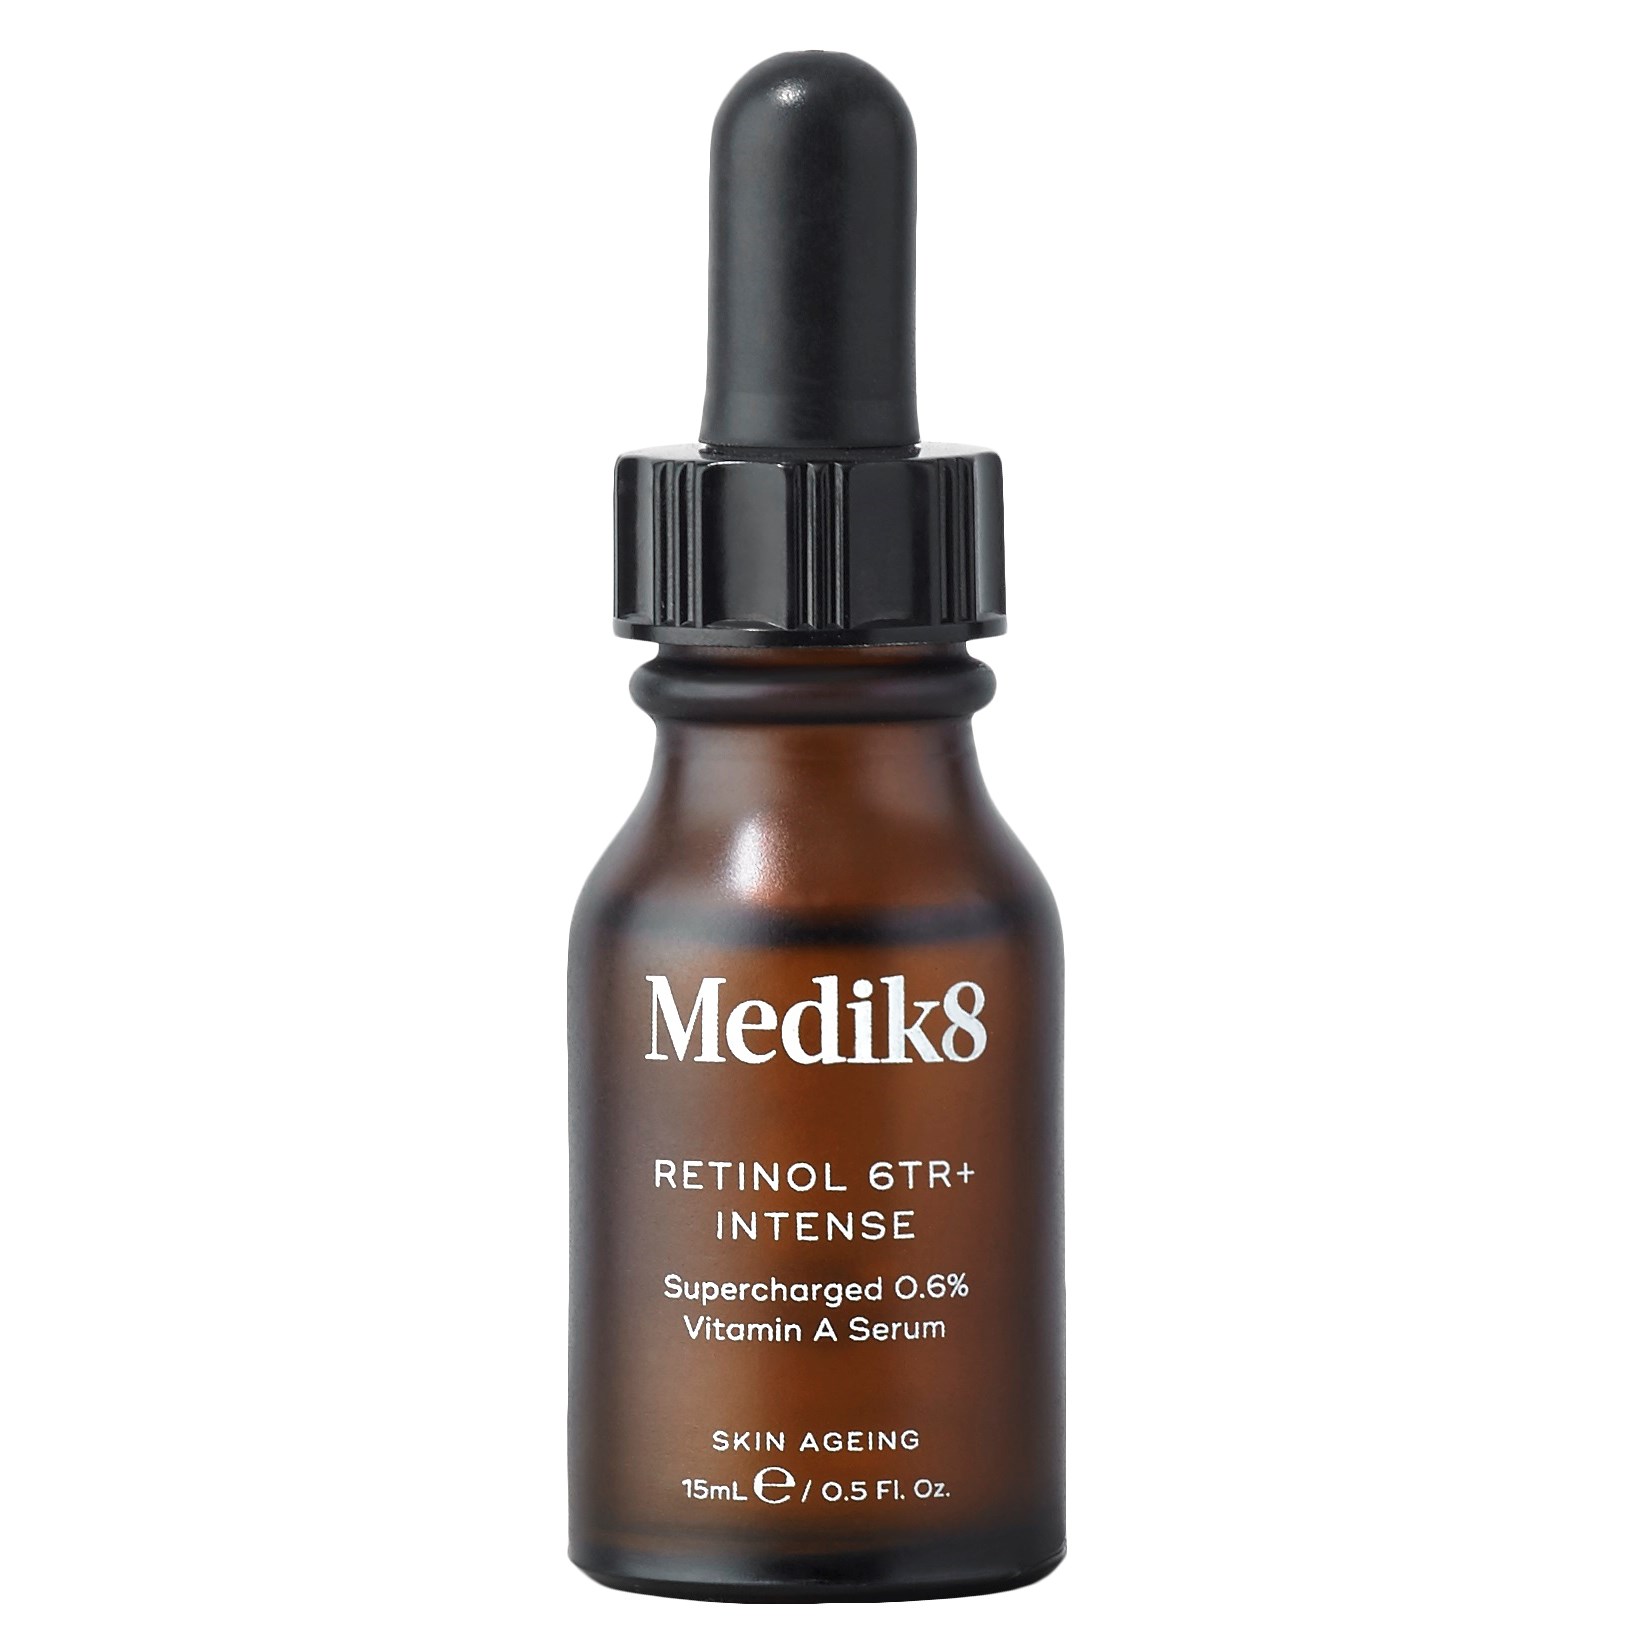 Läs mer om Medik8 Skin Ageing Retinol 6TR+ Intense 15 ml